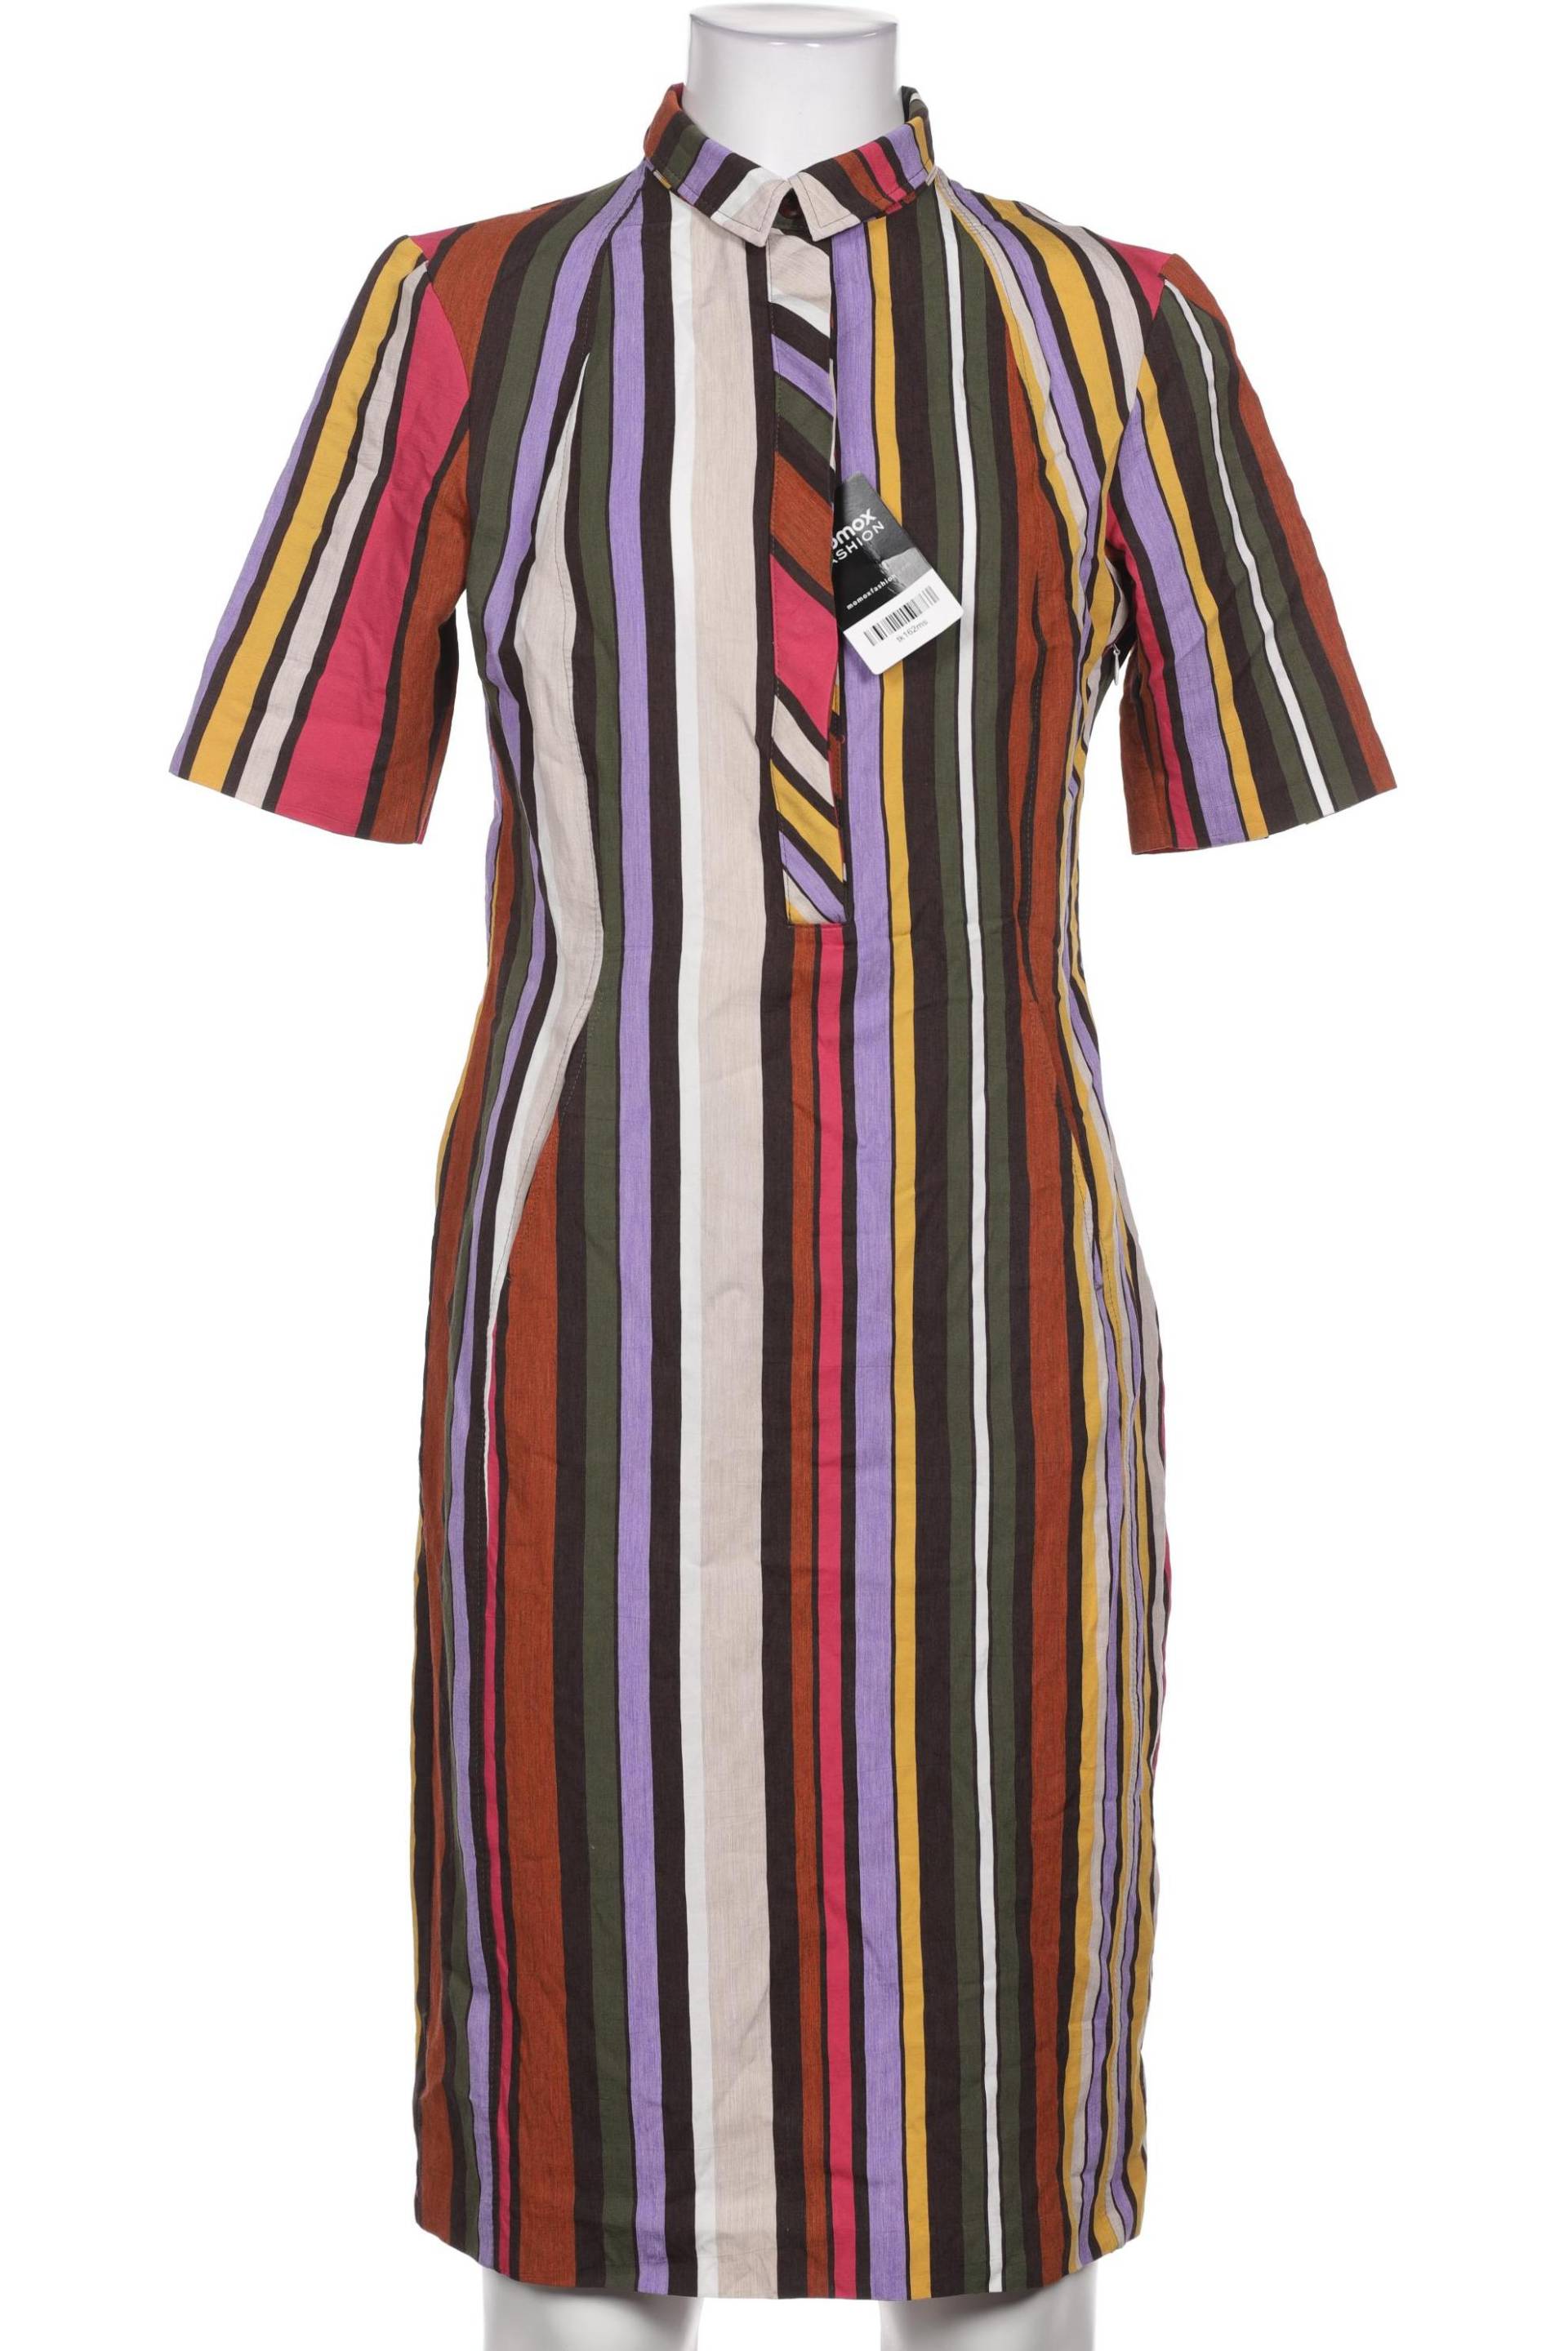 Walbusch Damen Kleid, mehrfarbig, Gr. 36 von Walbusch